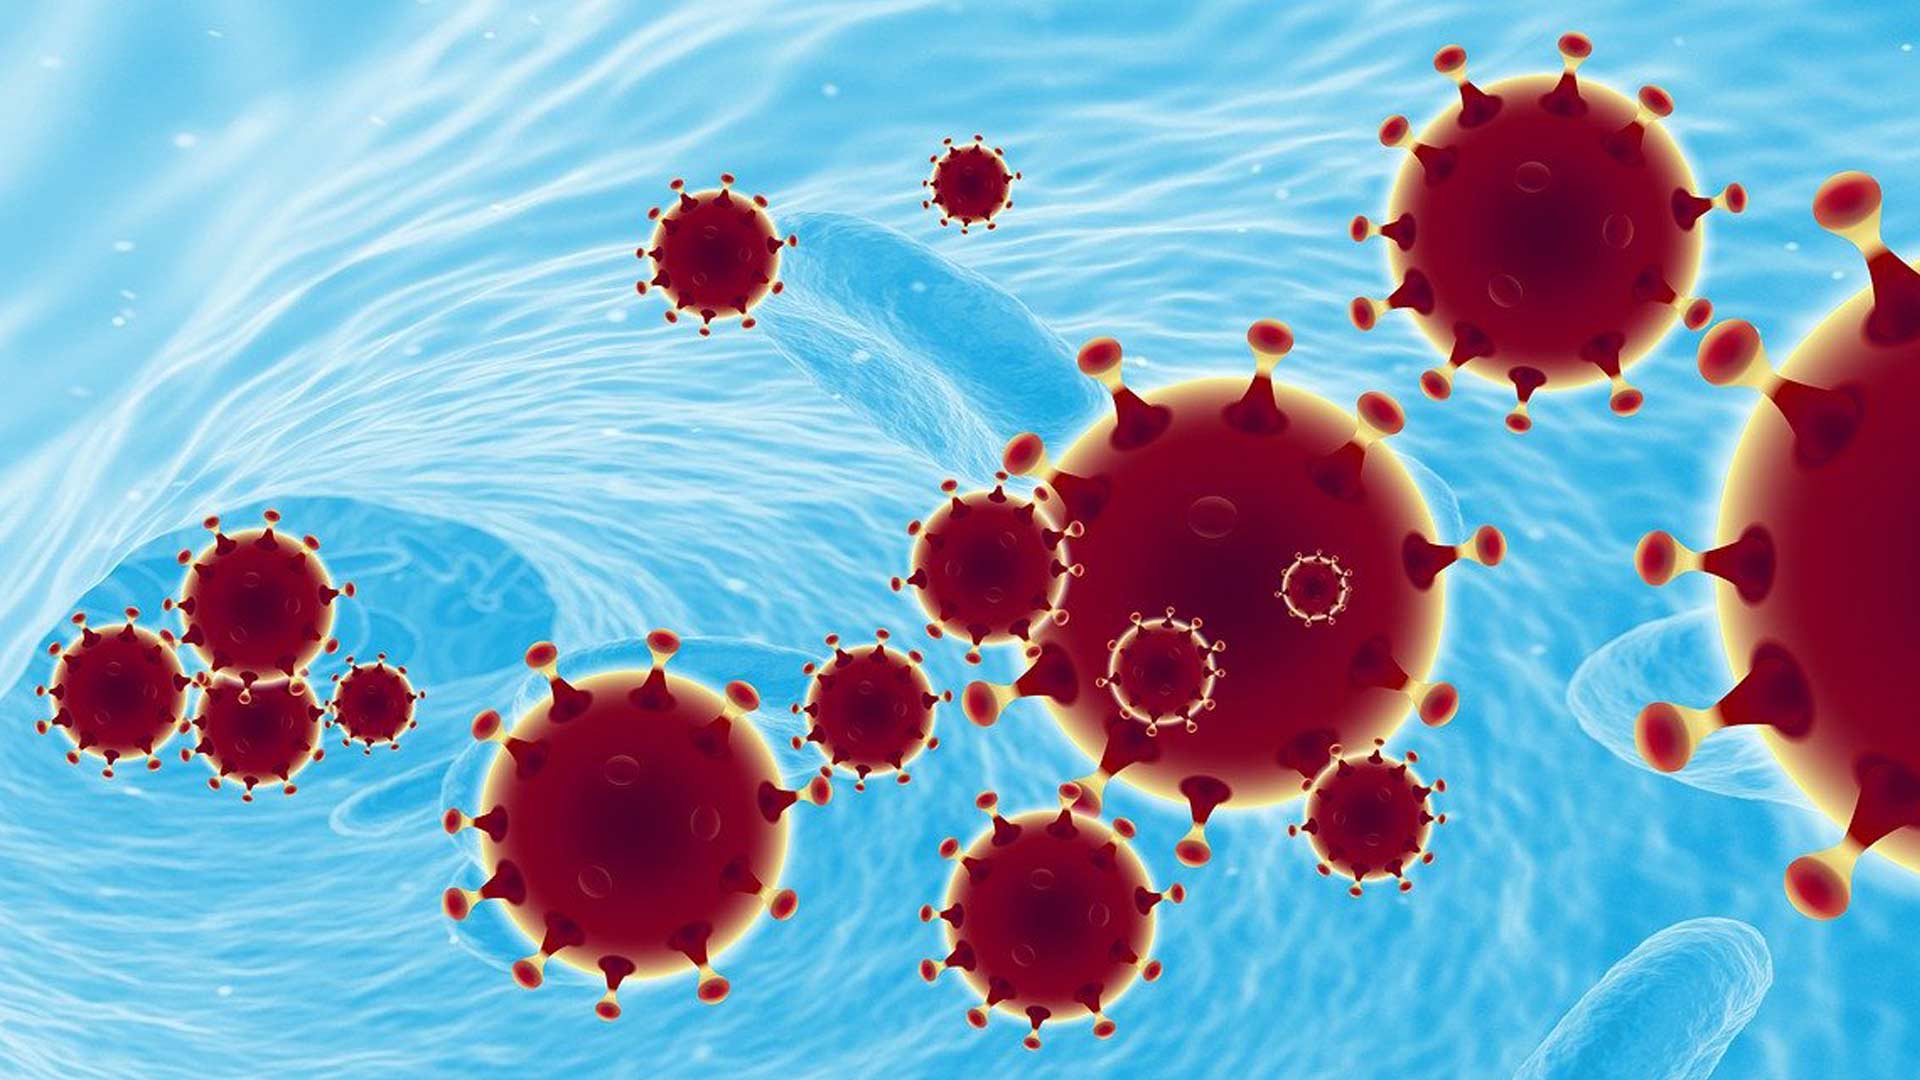 Corona Viren vor hell blauem Hintergrund